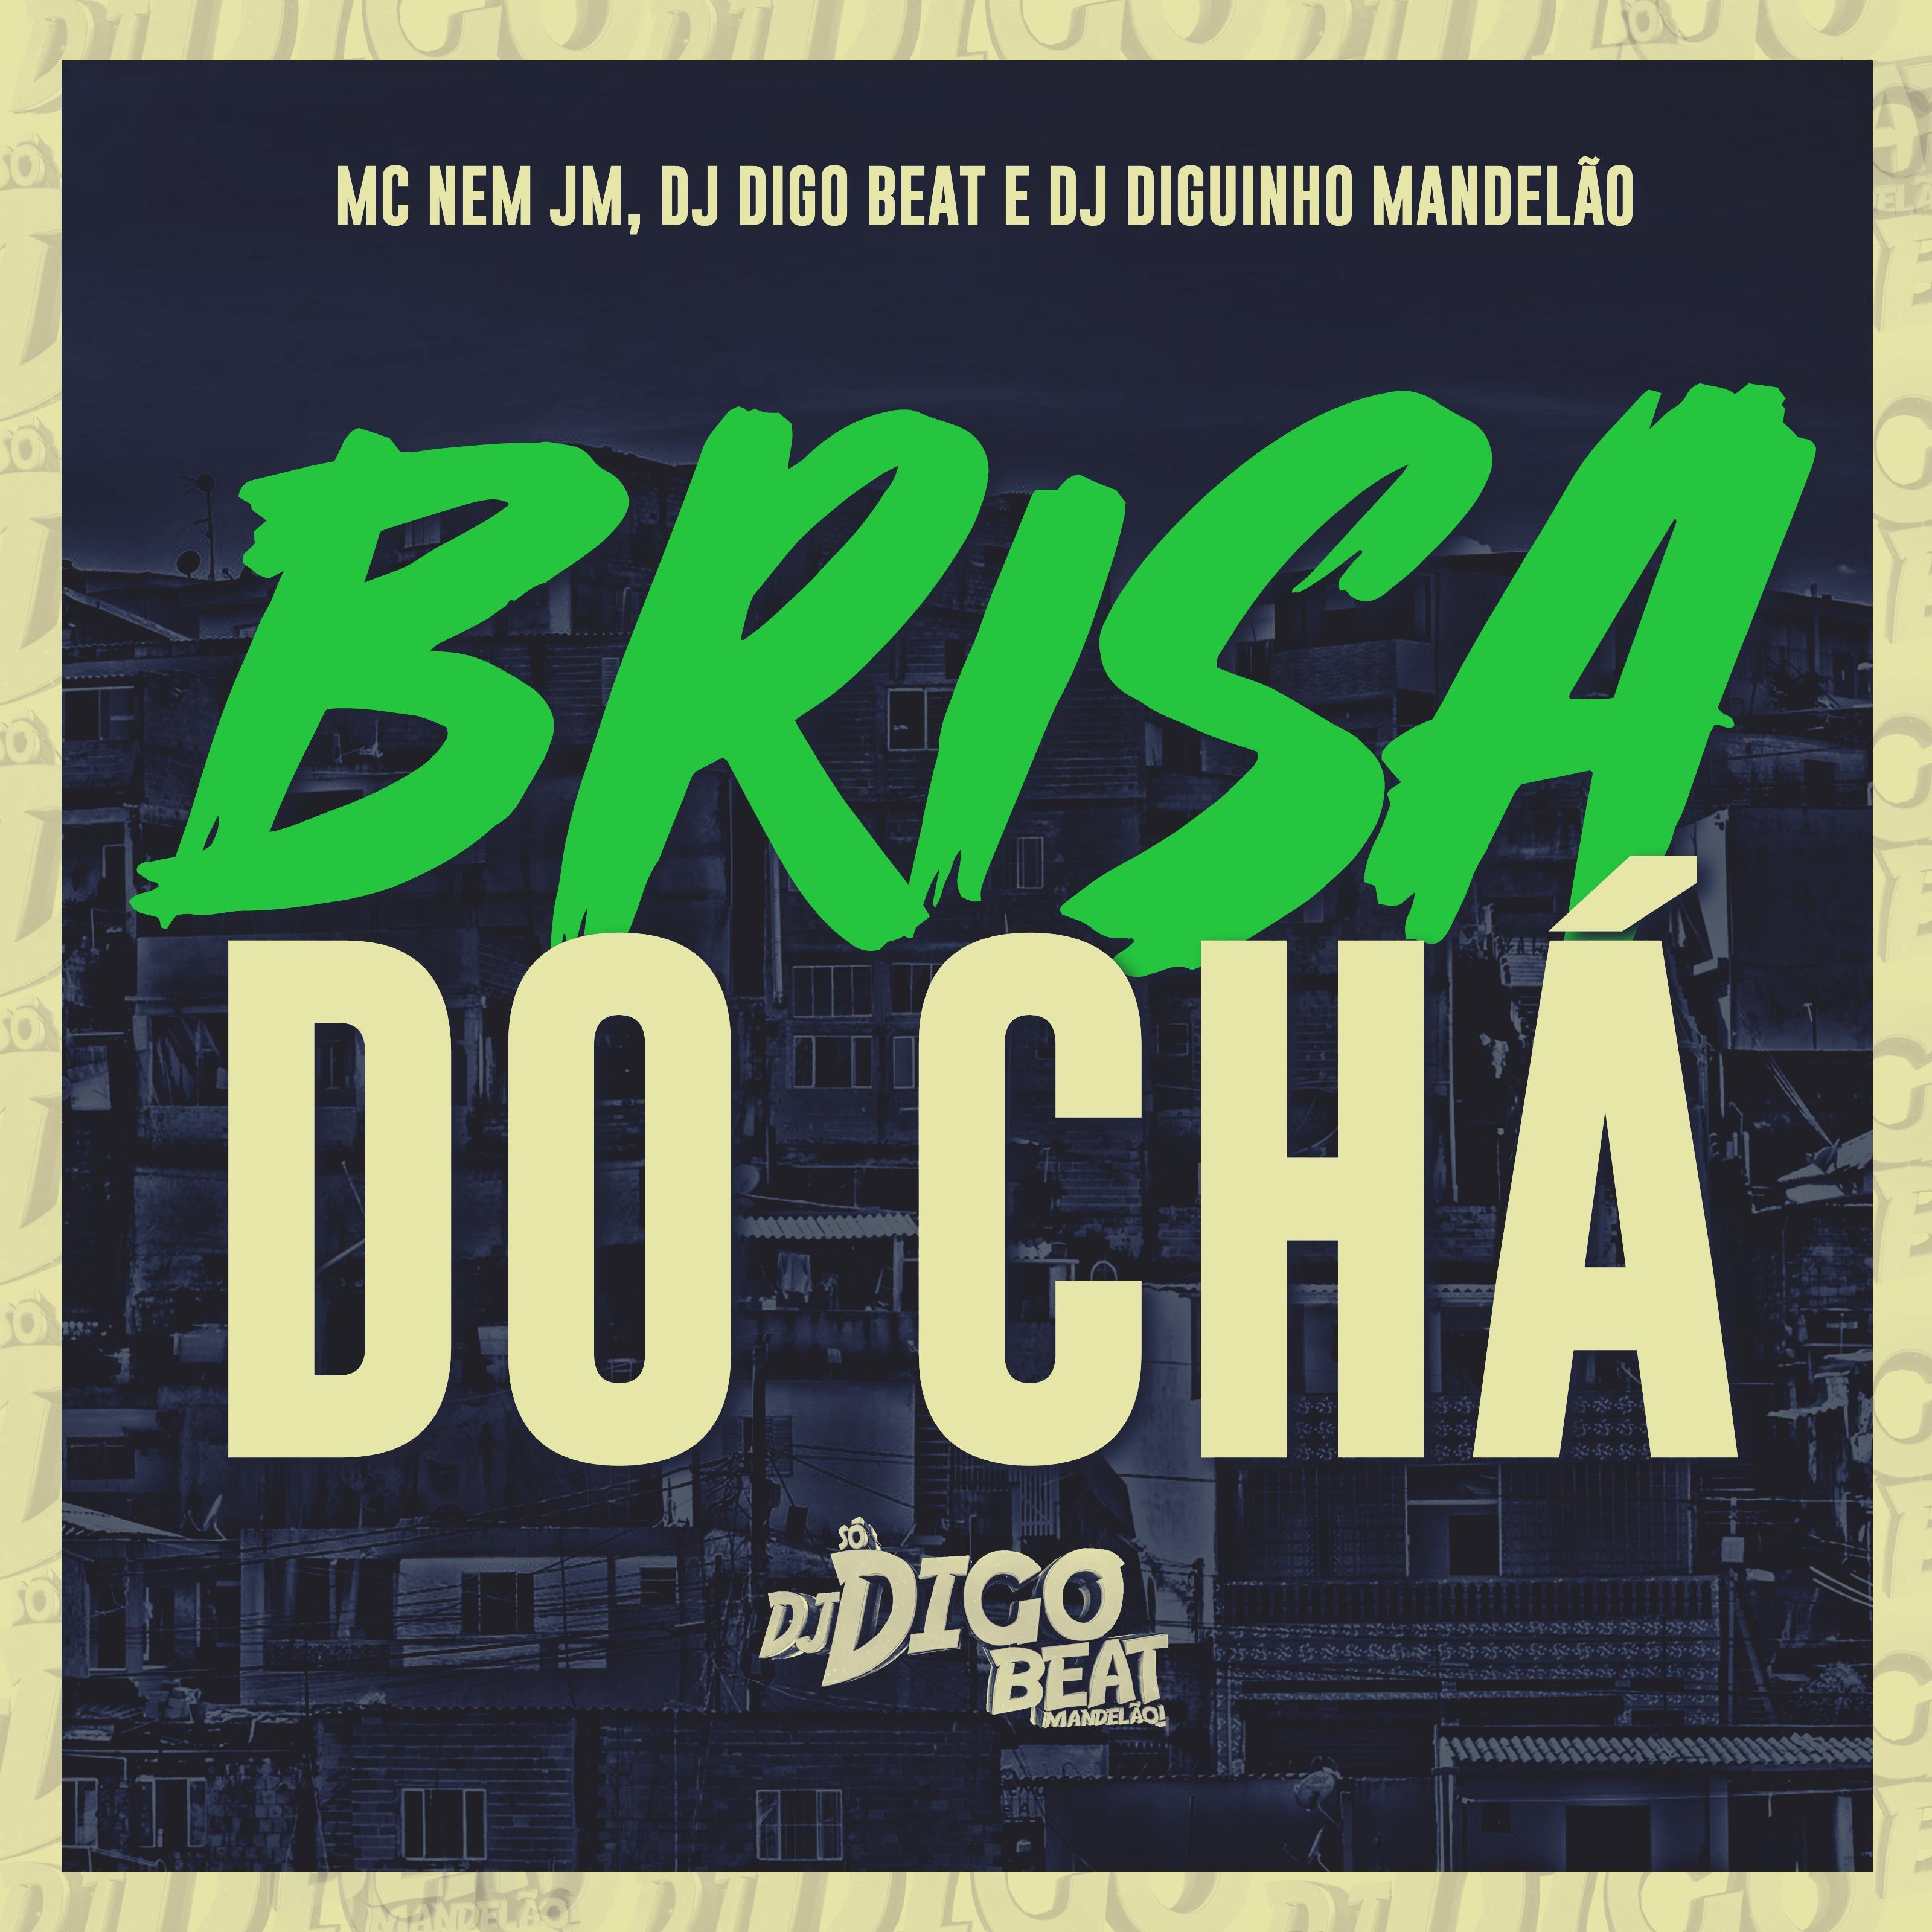 DJ Digo Beat - Brisa do Chá